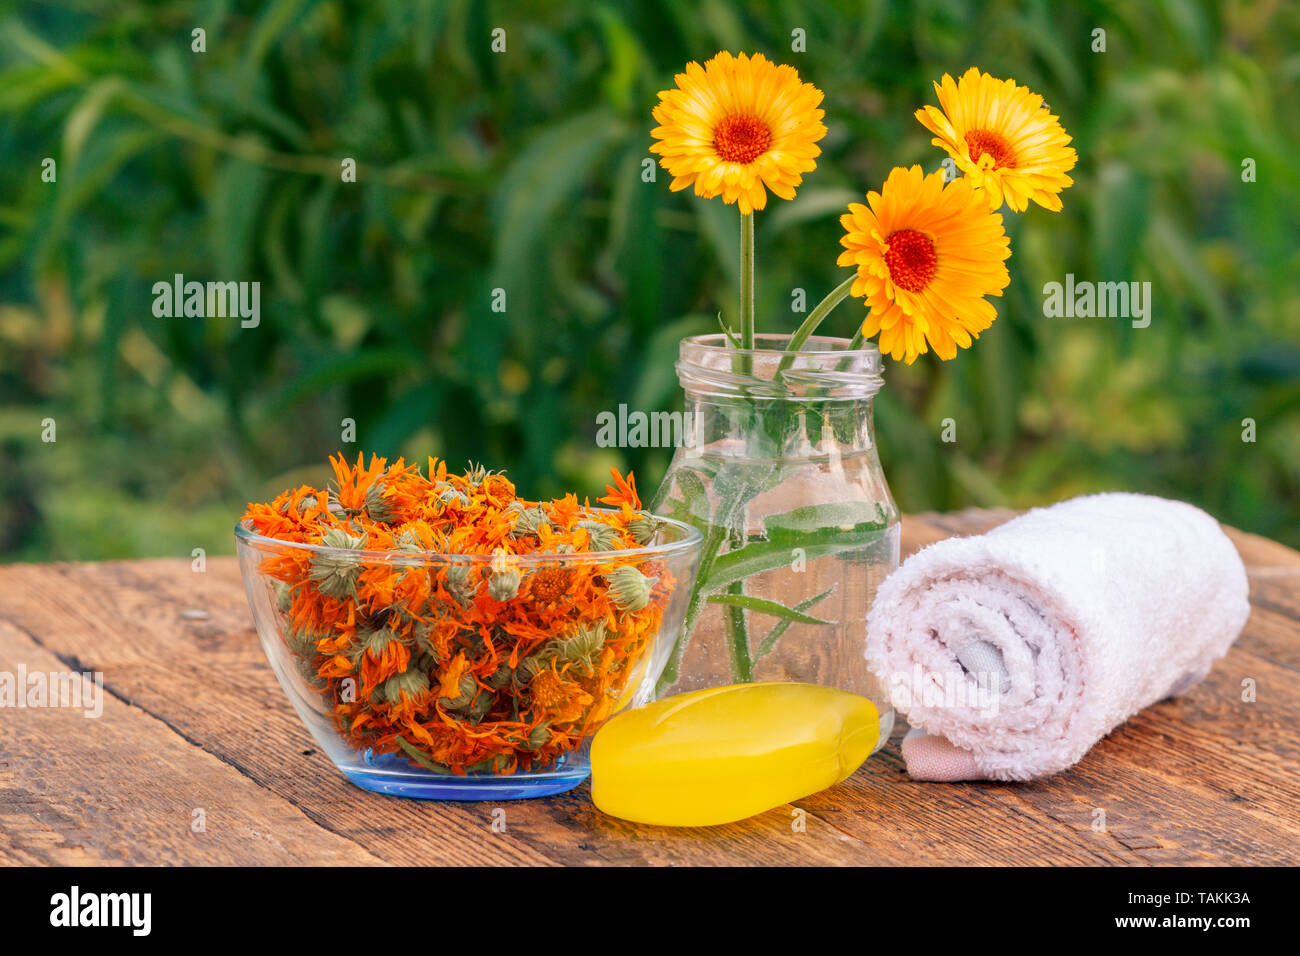 NY SPICE SHOP Marigold Flowers - Dried Calendula Flowers - Natural  Calendula Flowers - Calendula Flowers - Calendula Flower Dried Natural -  Dried